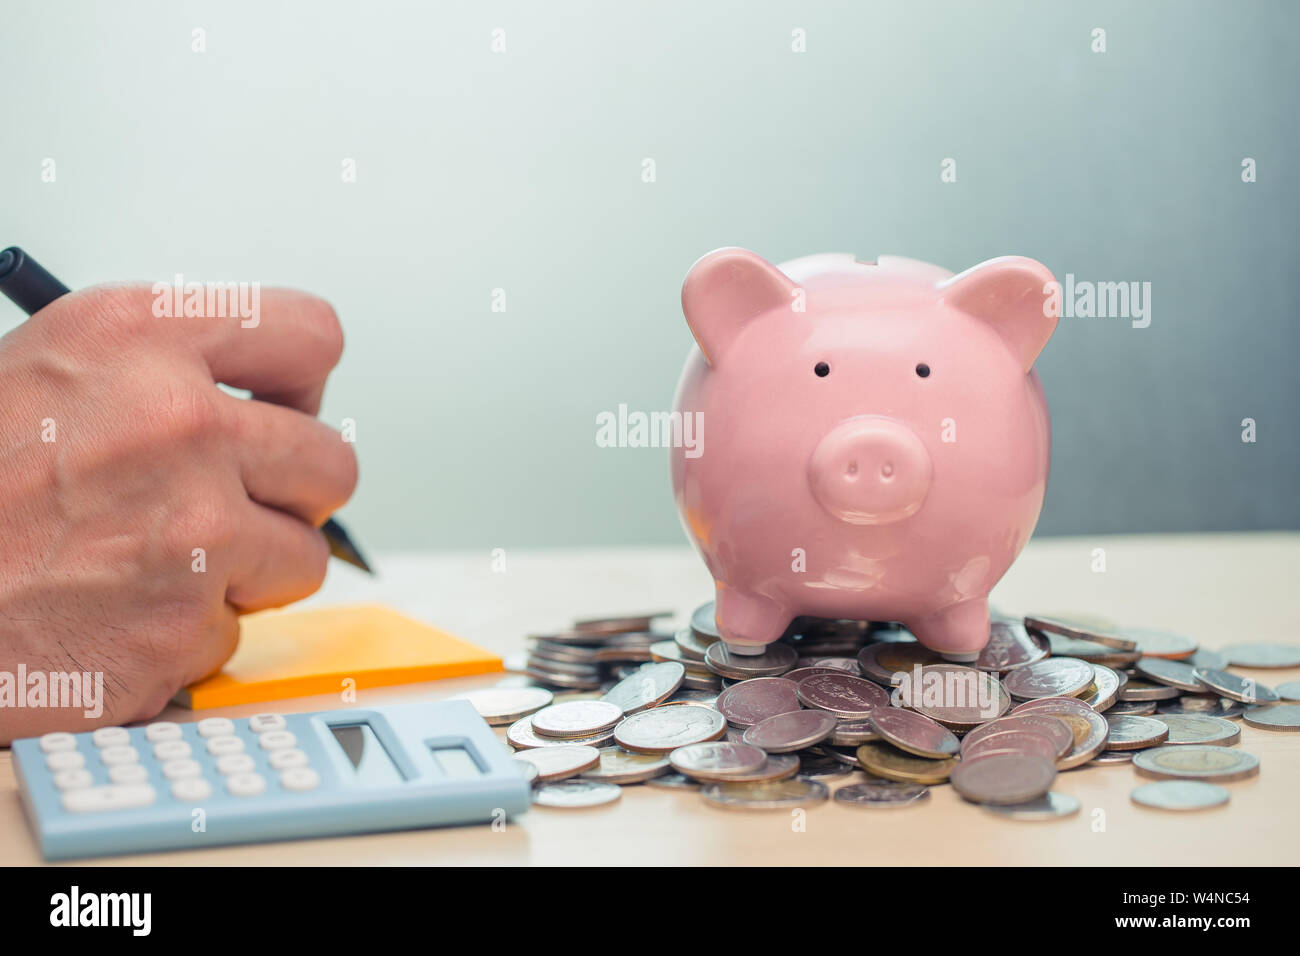 Checkliste Geld sparen Mit dem Konto Hinweis für Einnahmen- und Konzept Stockfoto